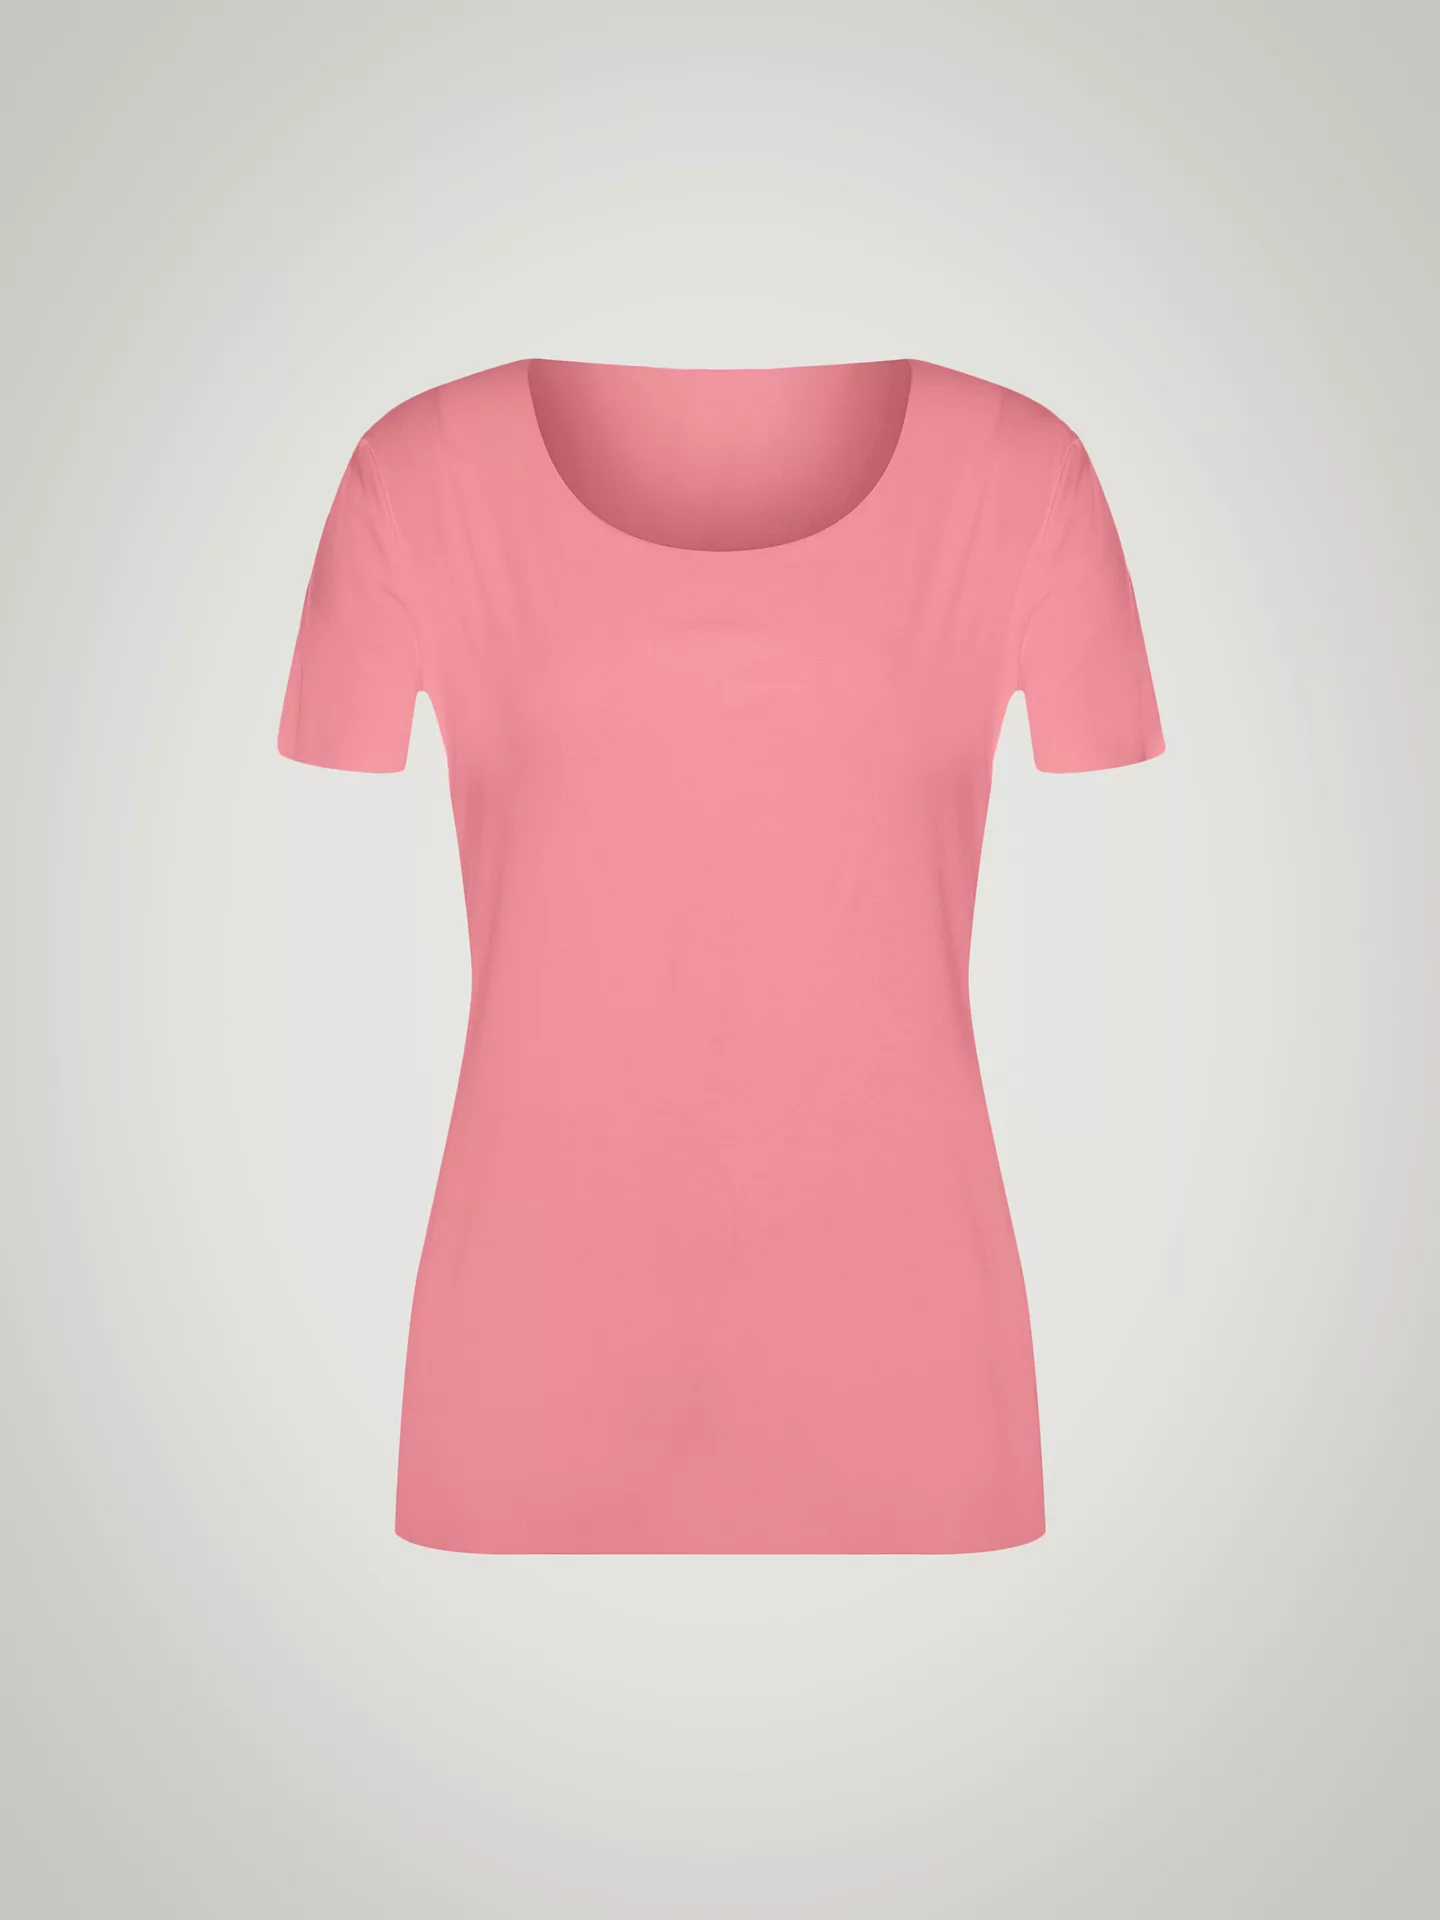 Wolford - Aurora Pure Shirt, Frau, brandied apricot, Größe: L günstig online kaufen